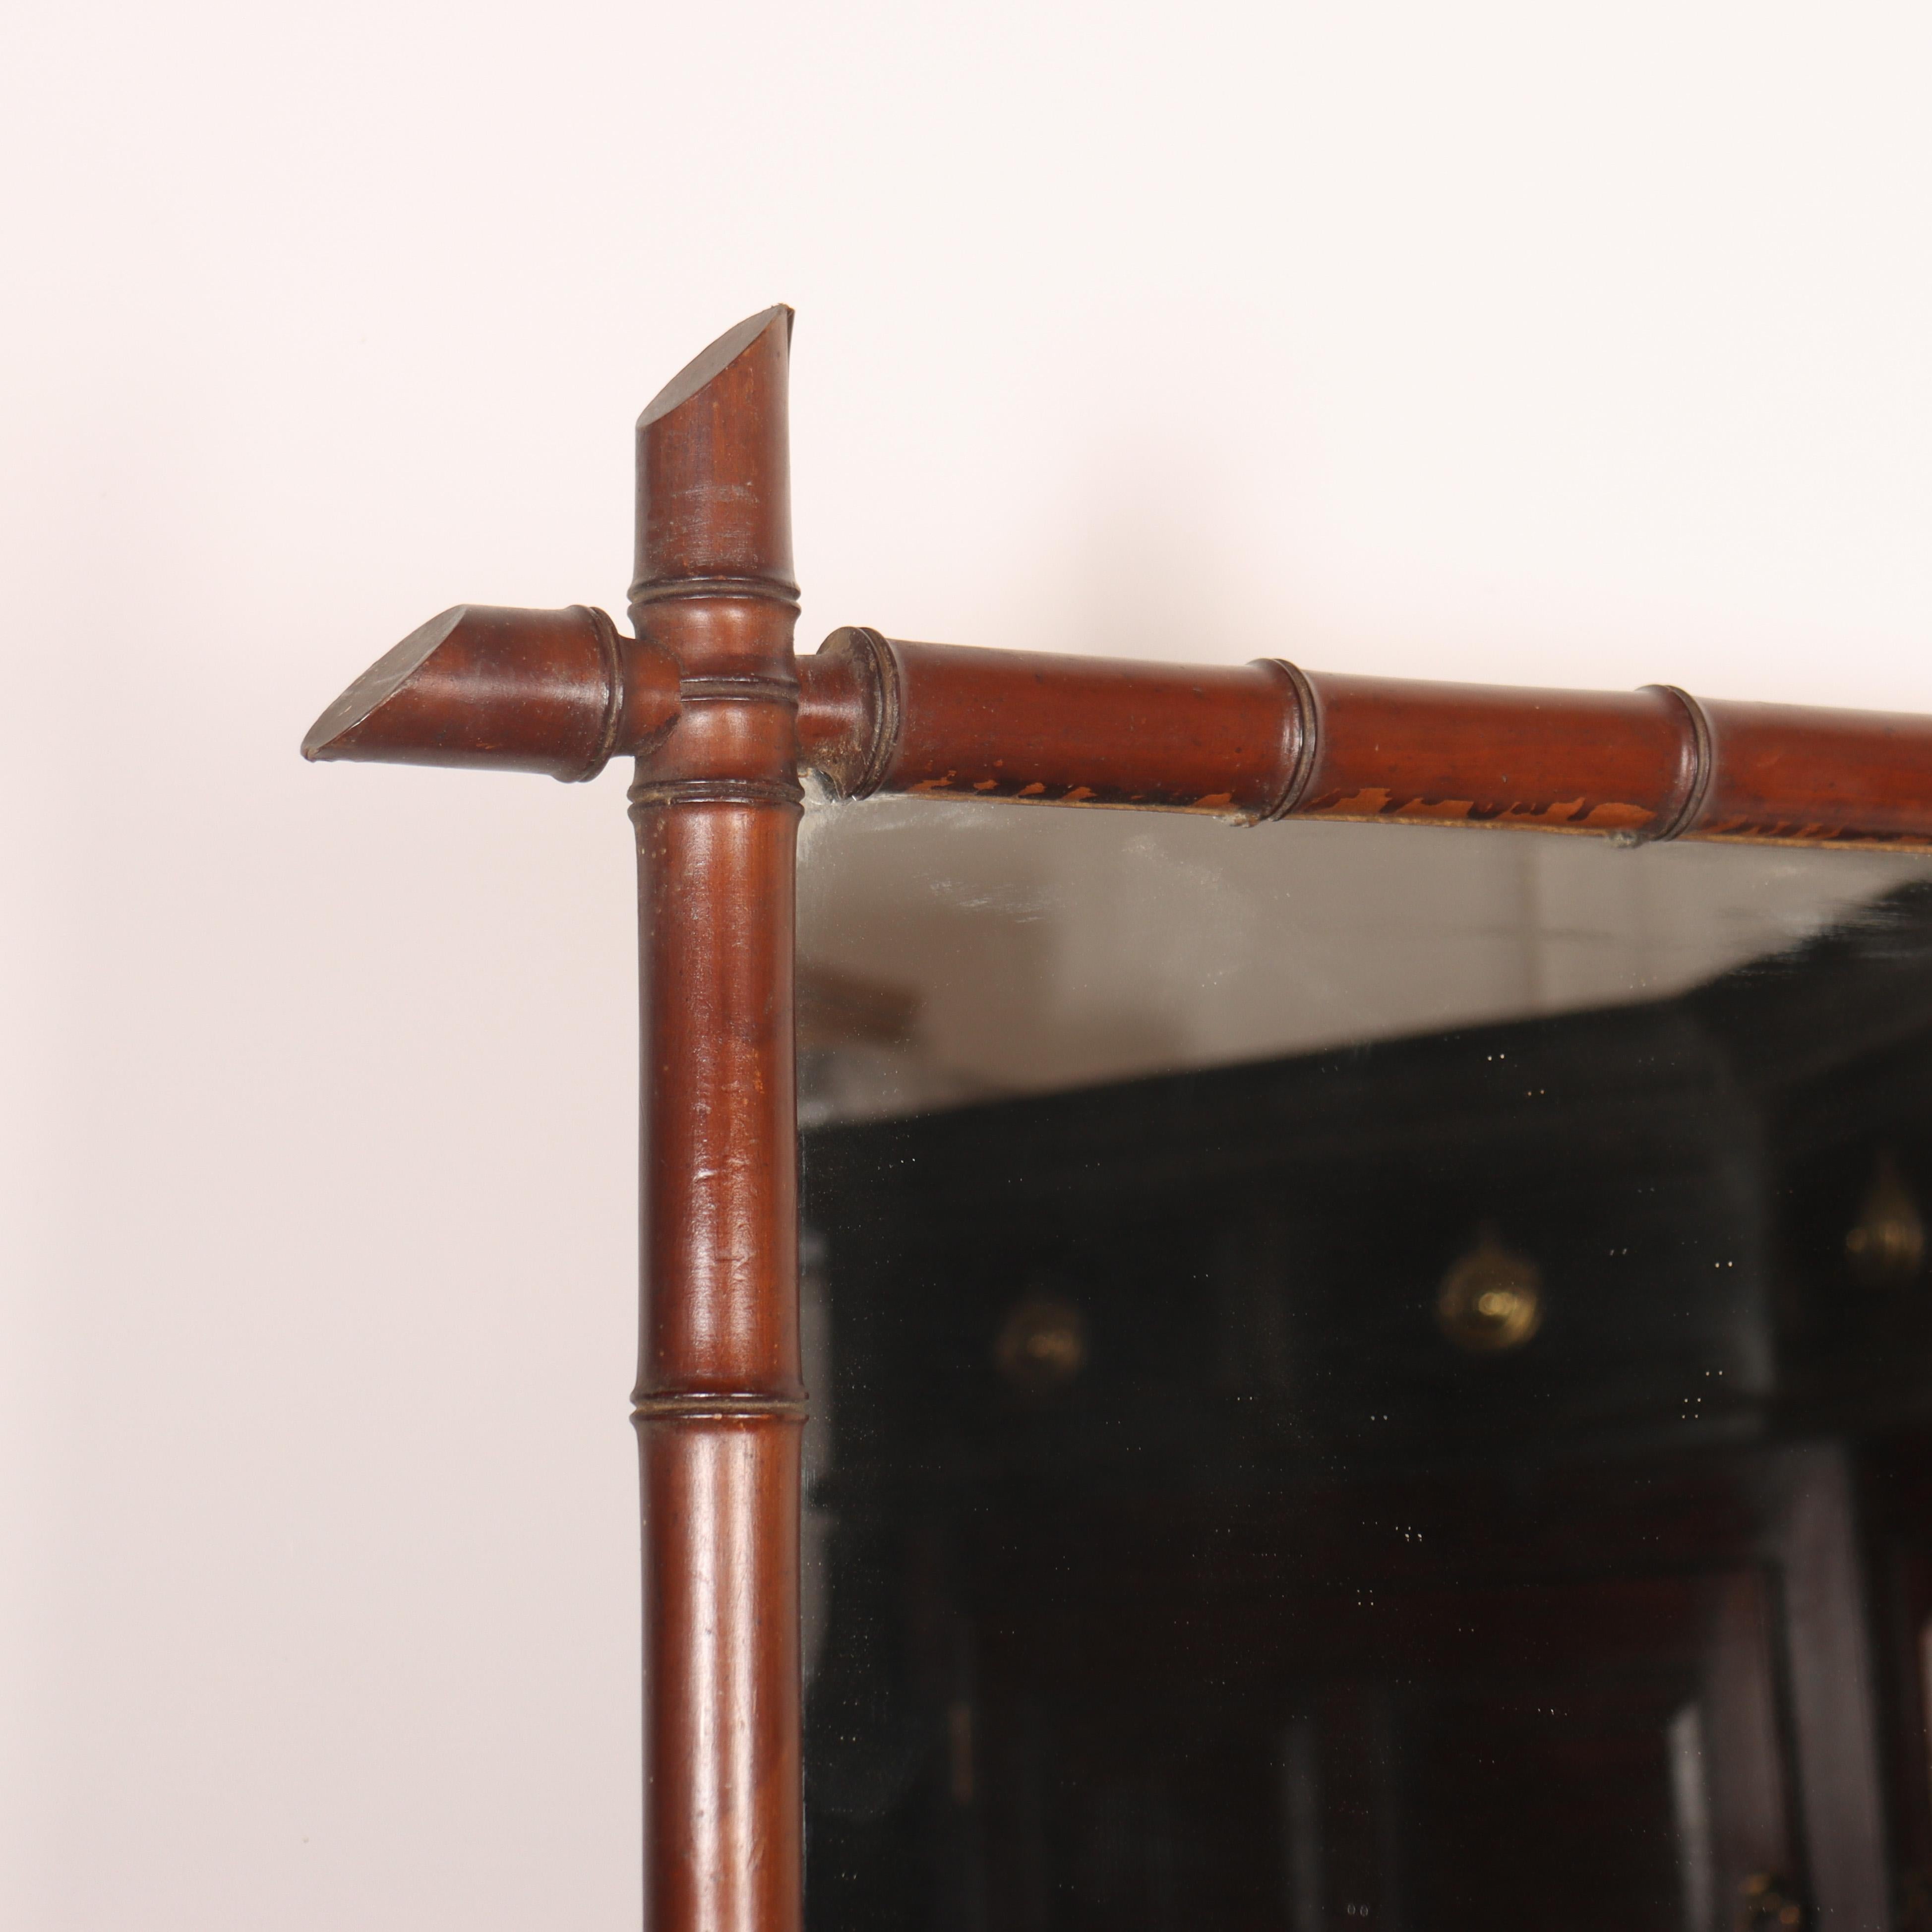 19. Jh. Französischer Spiegel aus falschem Bambus mit originaler Spiegelplatte. 1890.

Aktenzeichen: 8218

Abmessungen
23,5 Zoll (60 cm) breit
1,5 Zoll (4 cm) tief
30,5 Zoll (77 cm) hoch